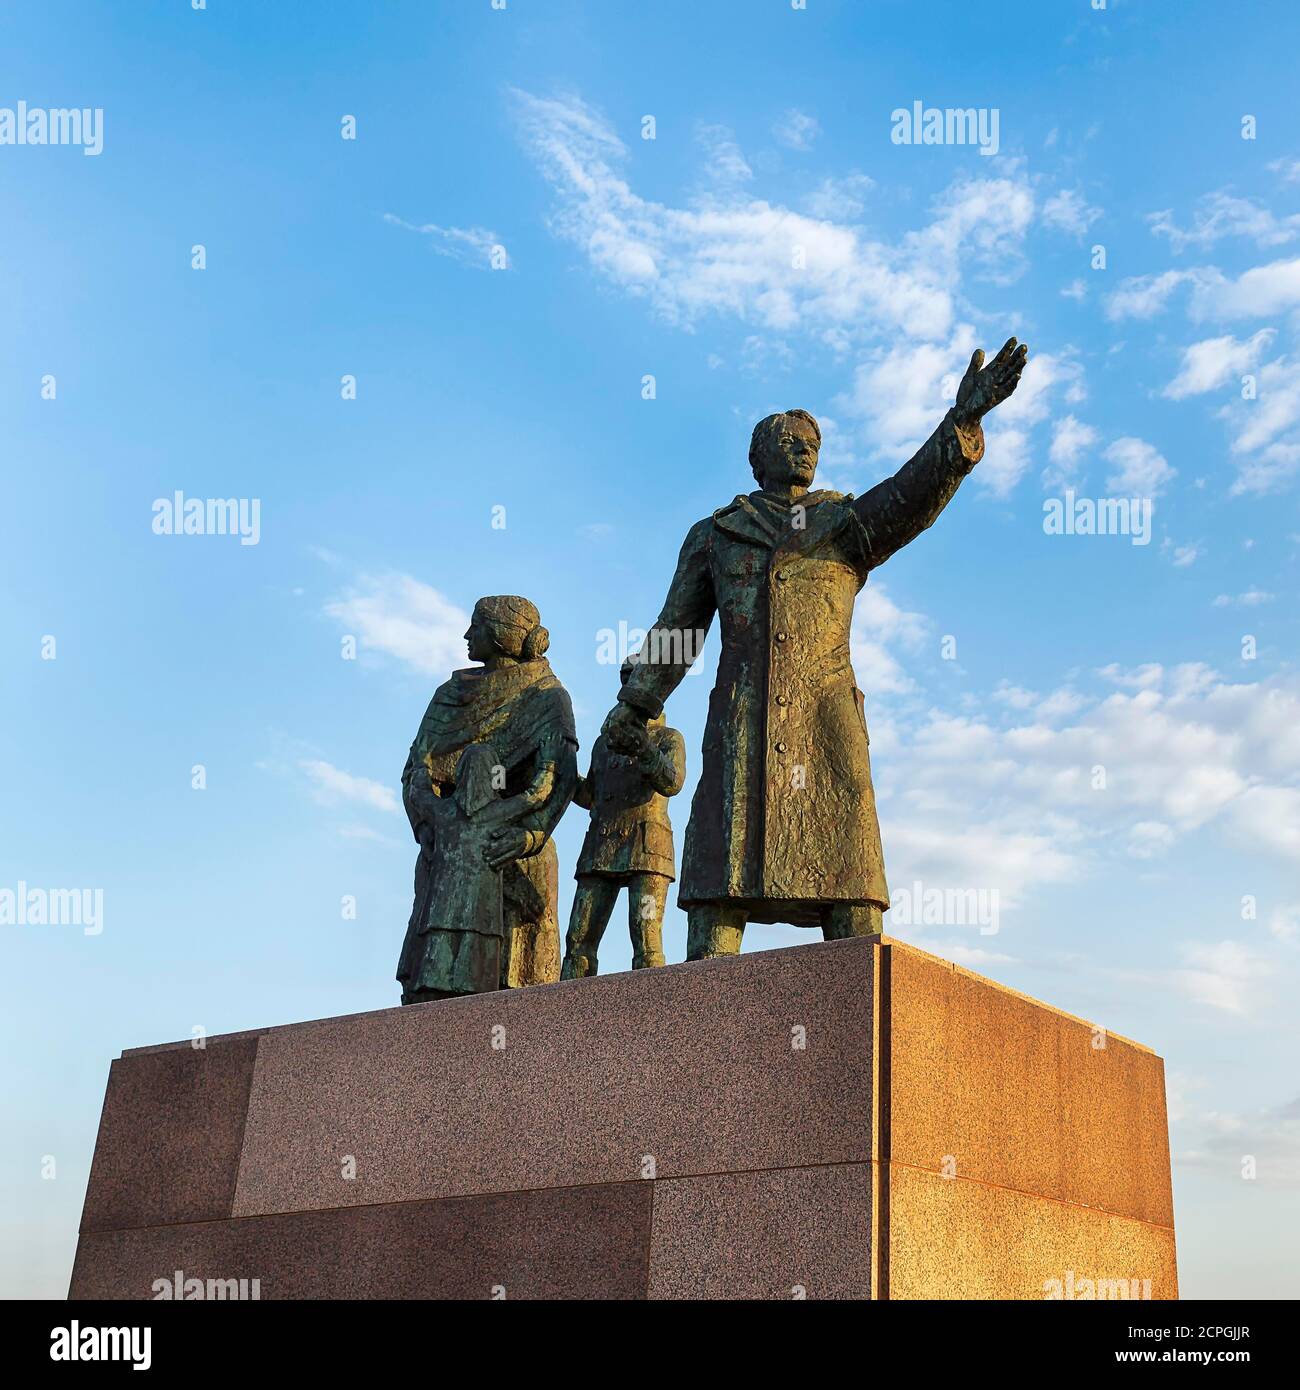 Monumento degli emigranti, scultura di una famiglia emigrante fatta di bronzo, l'uomo si affaccia in avanti, la donna guarda indietro, scultore Frank Varga, Seebäderkaje, Neuer ha Foto Stock